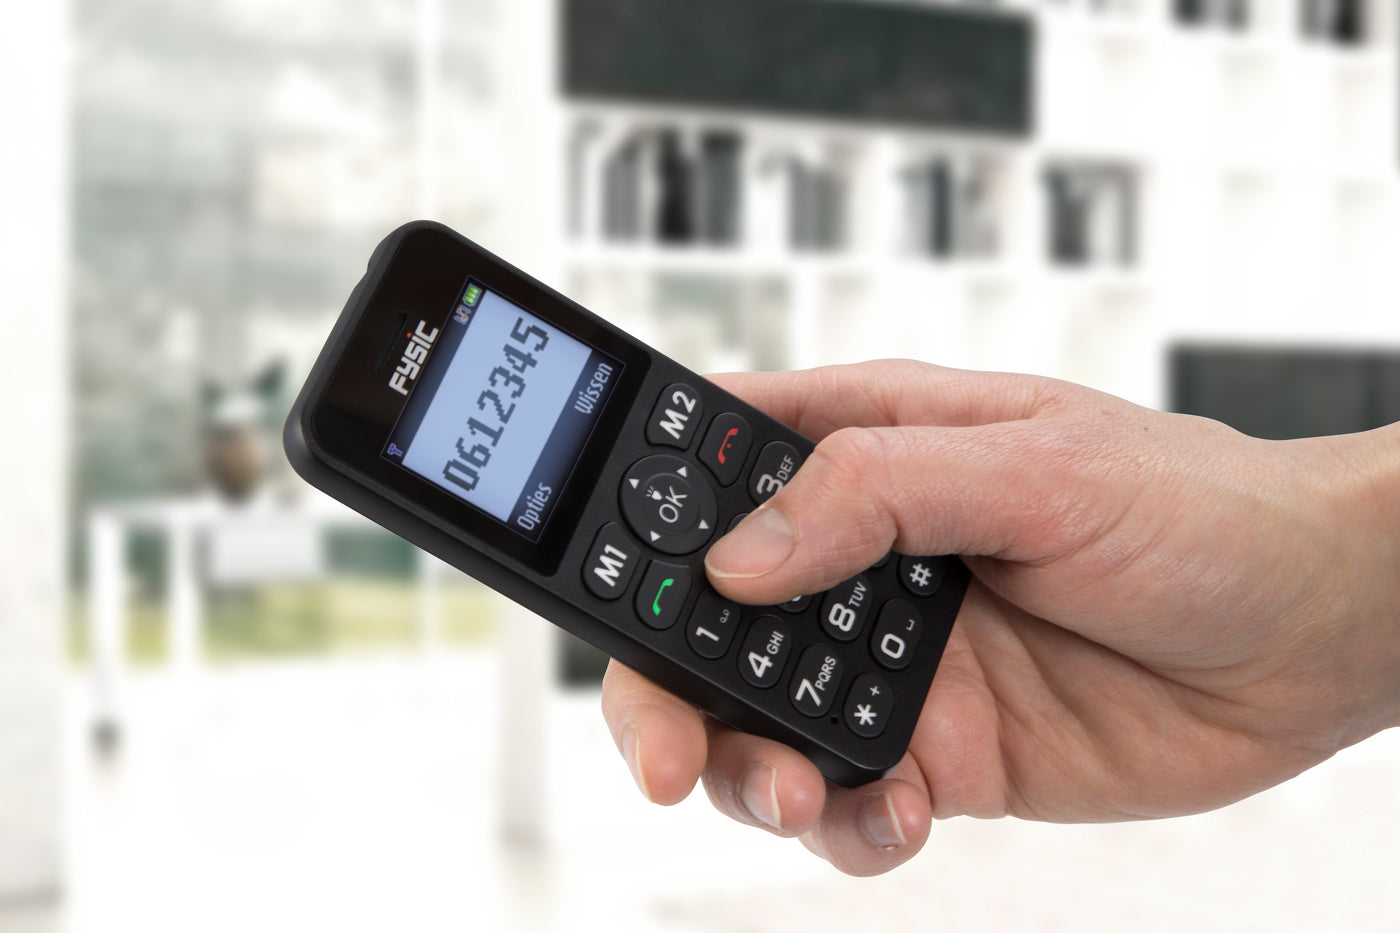 Fysic FM-7550 - Eenvoudige mobiele telefoon voor senioren met SOS paniekknop, zwart